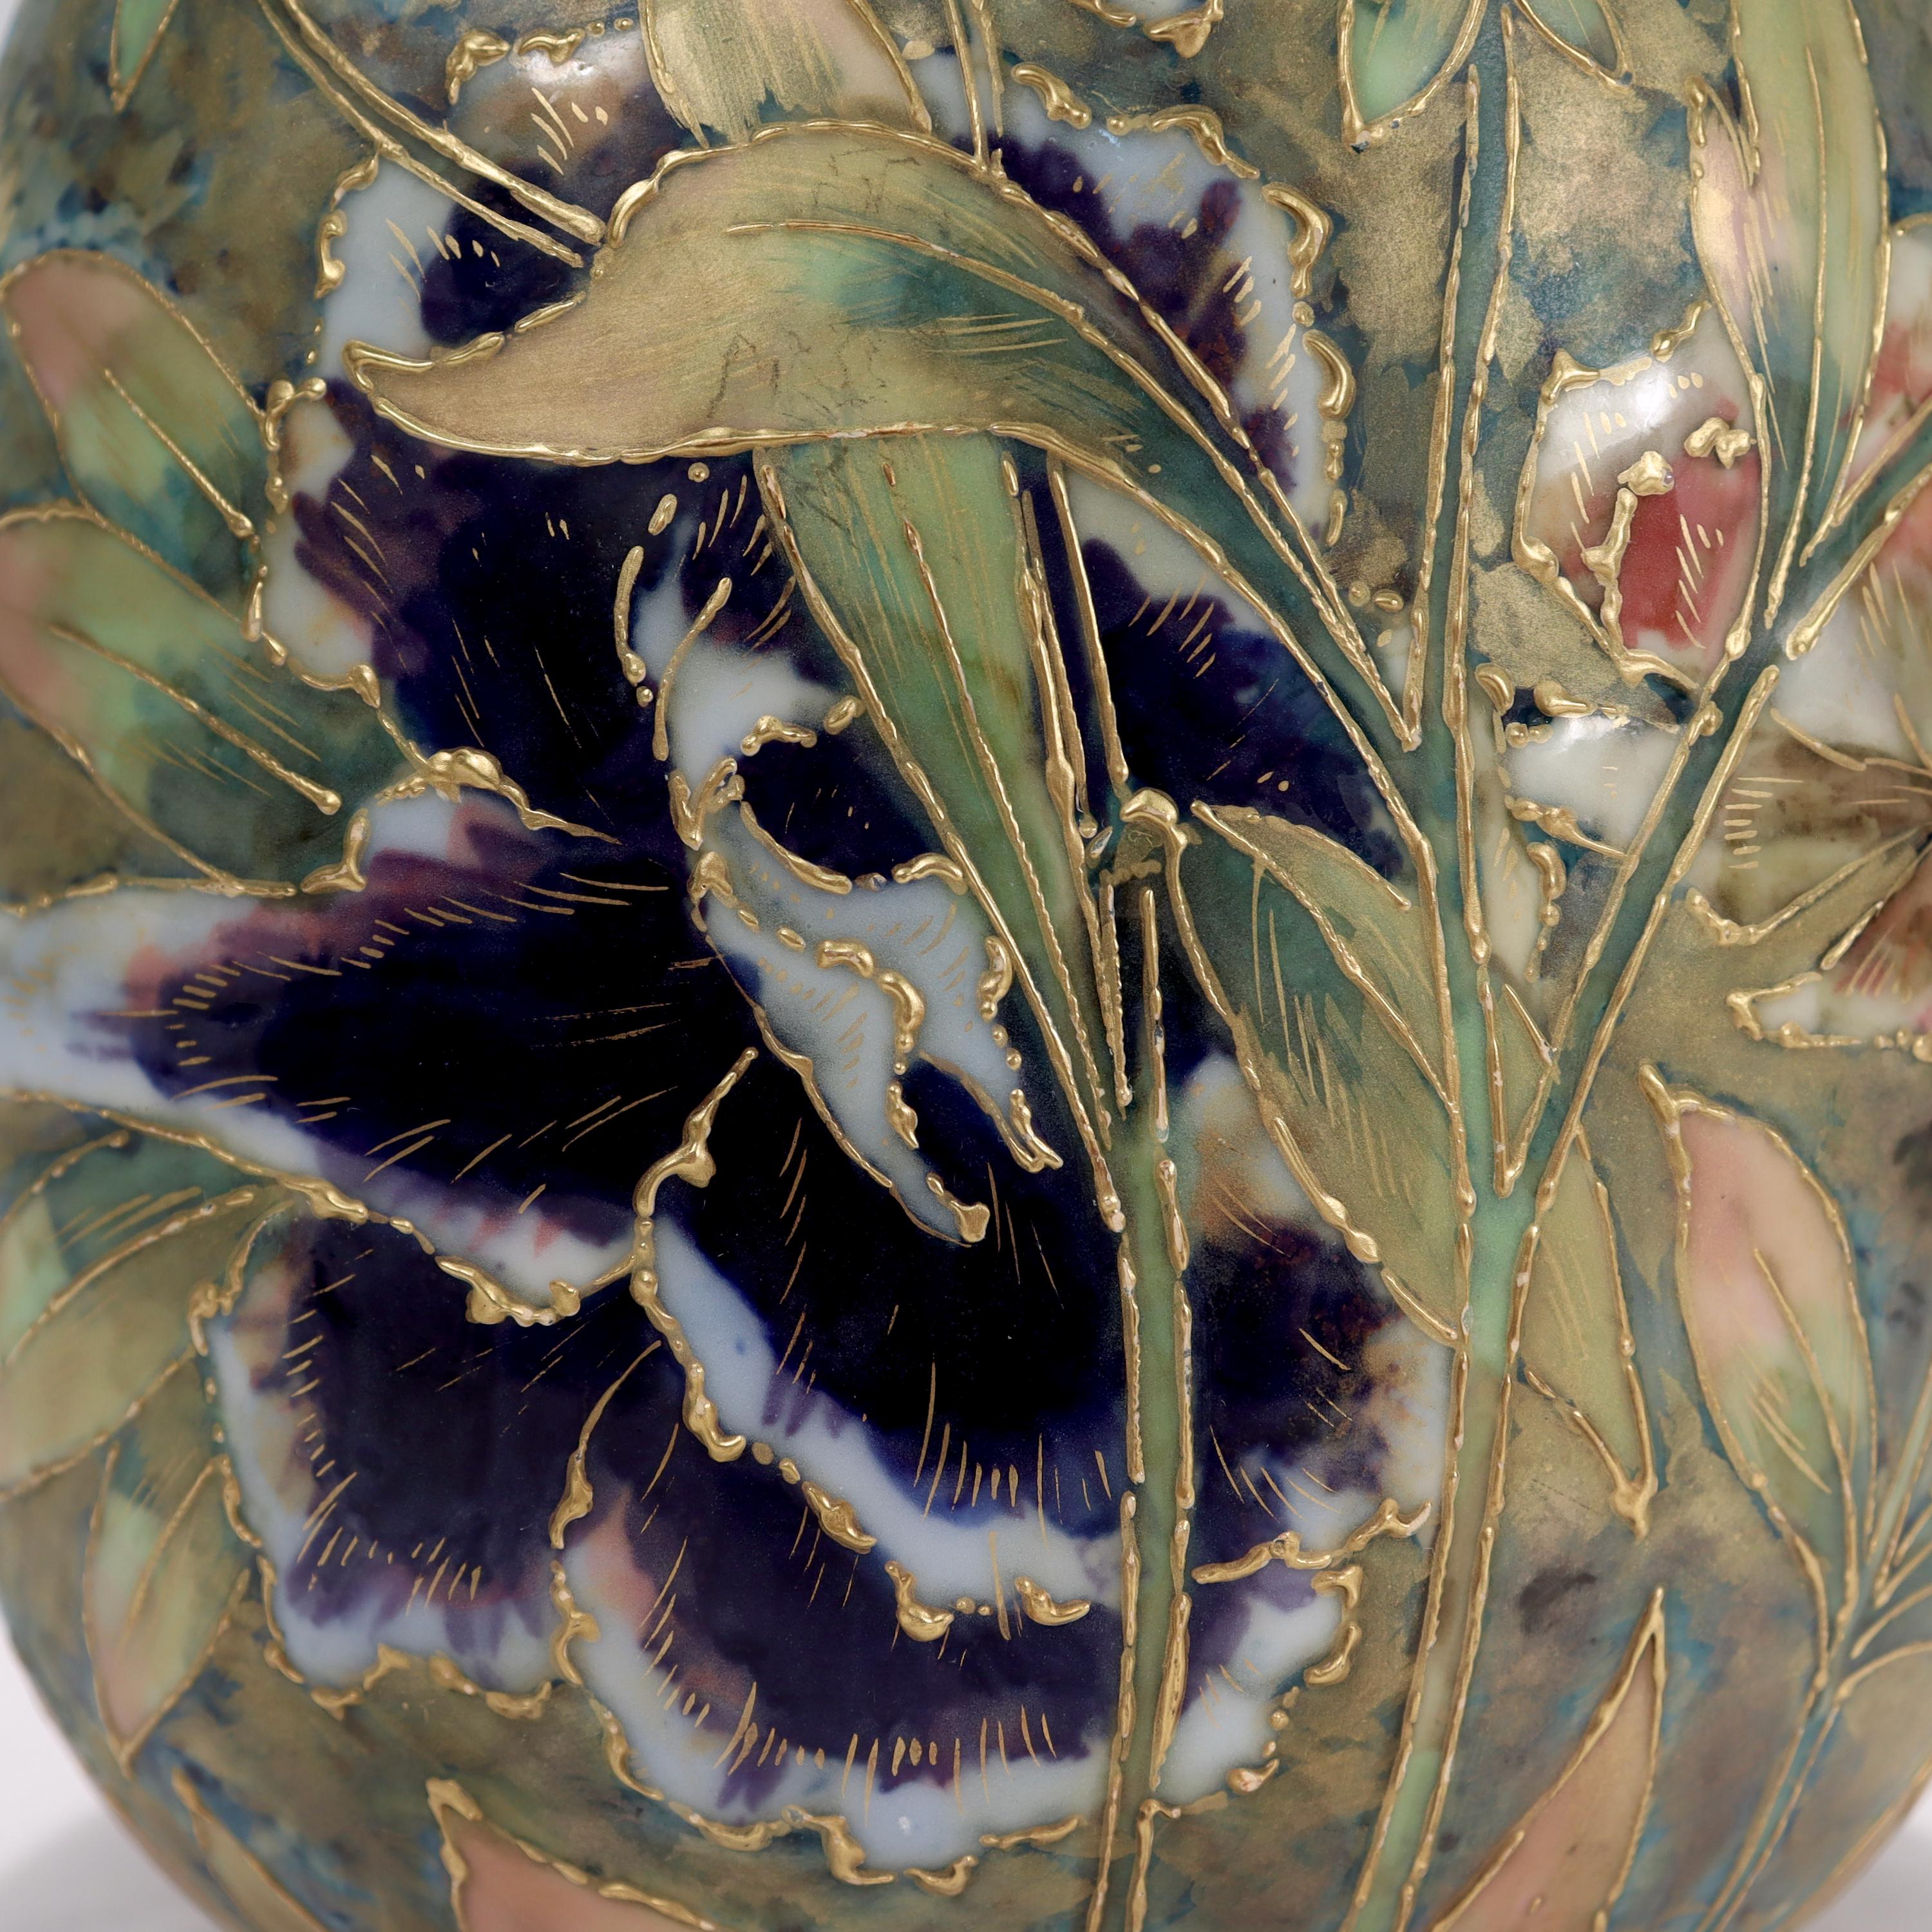 Antique Art Nouveau Amphora Pottery Vase with Matte & Enamel Peony Flowers For Sale 7